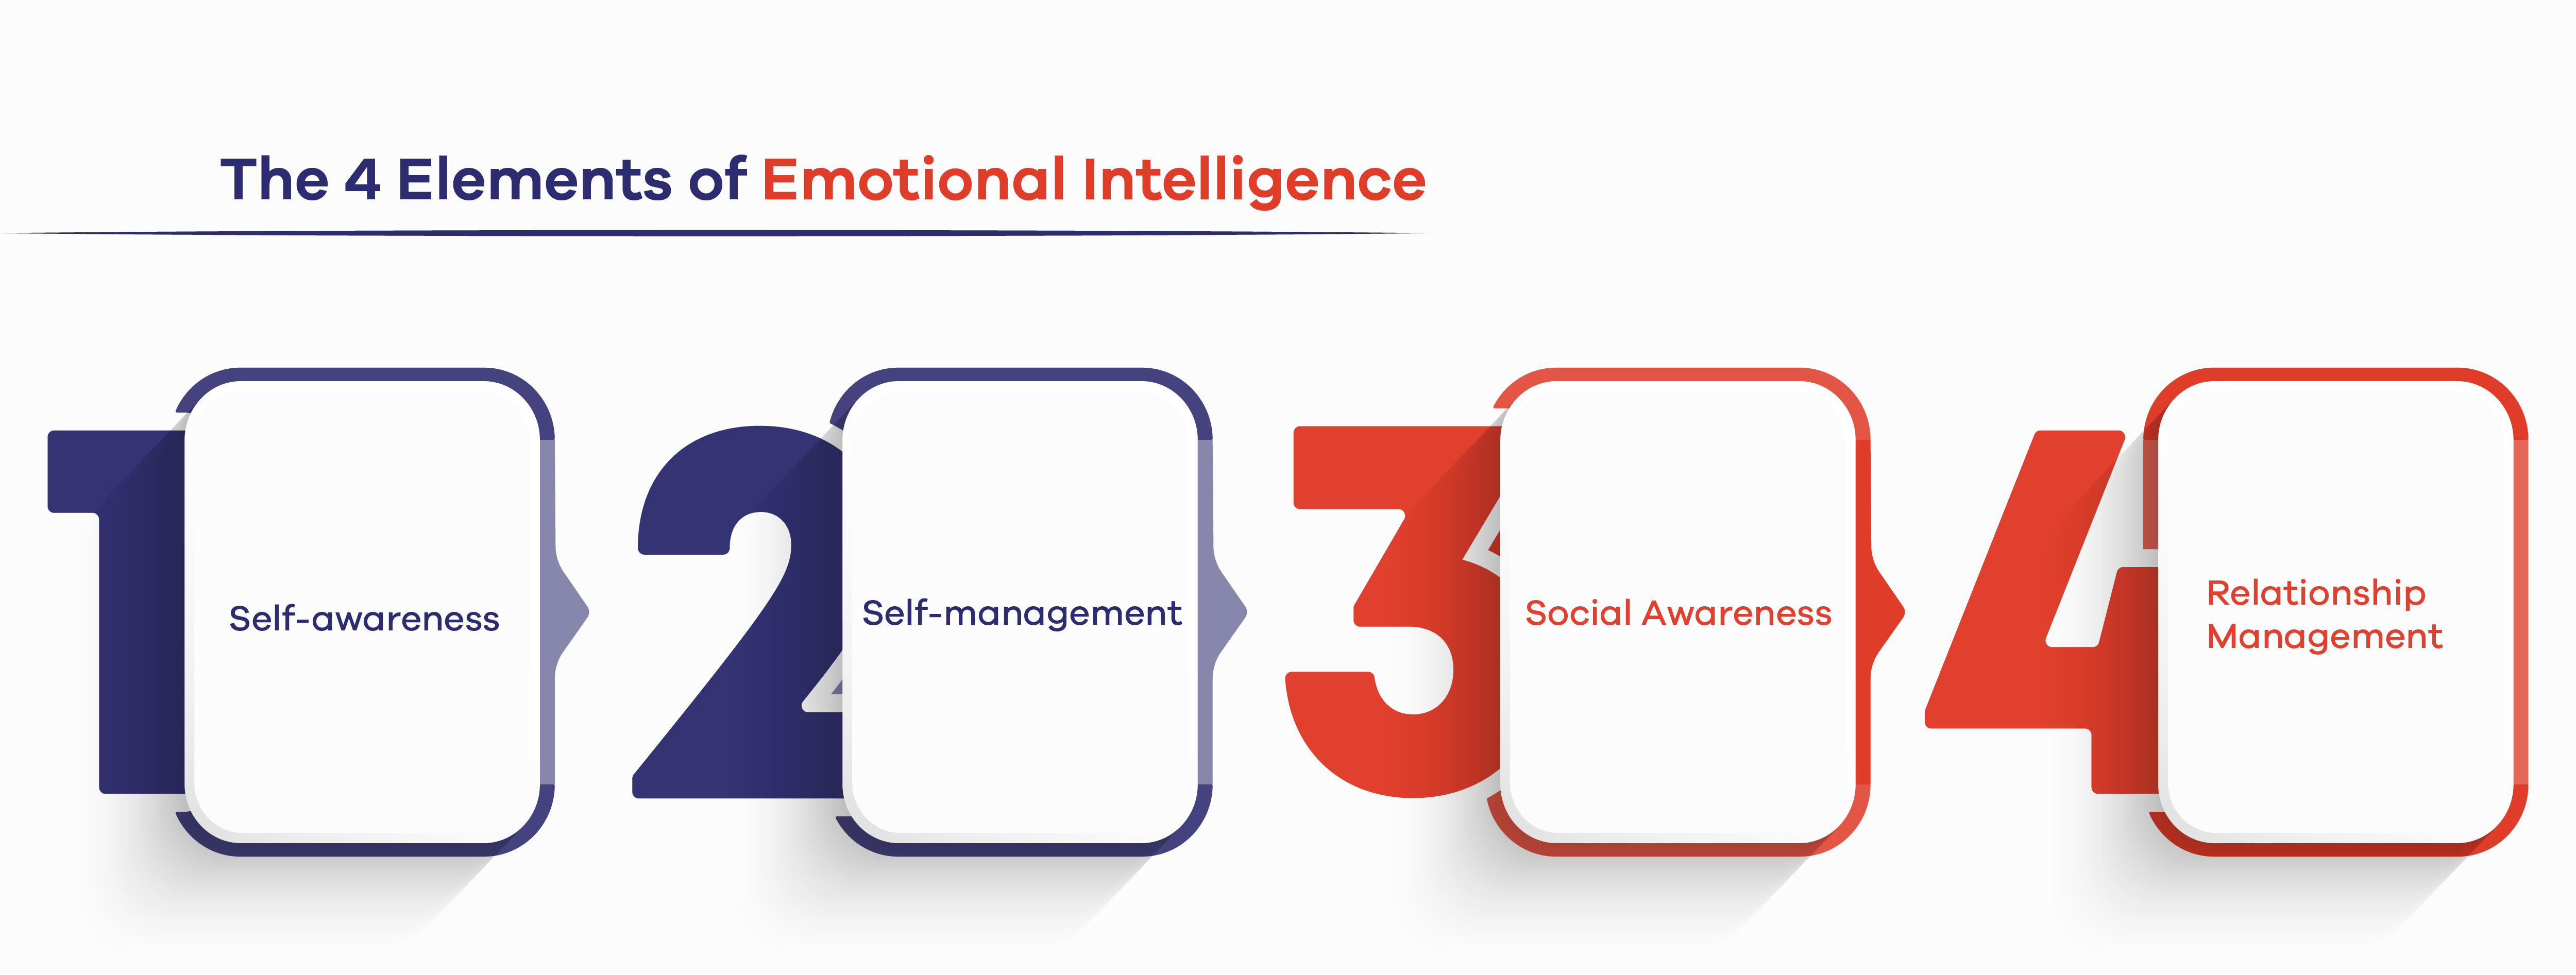 The 4 Elements of Emotional Intelligence 